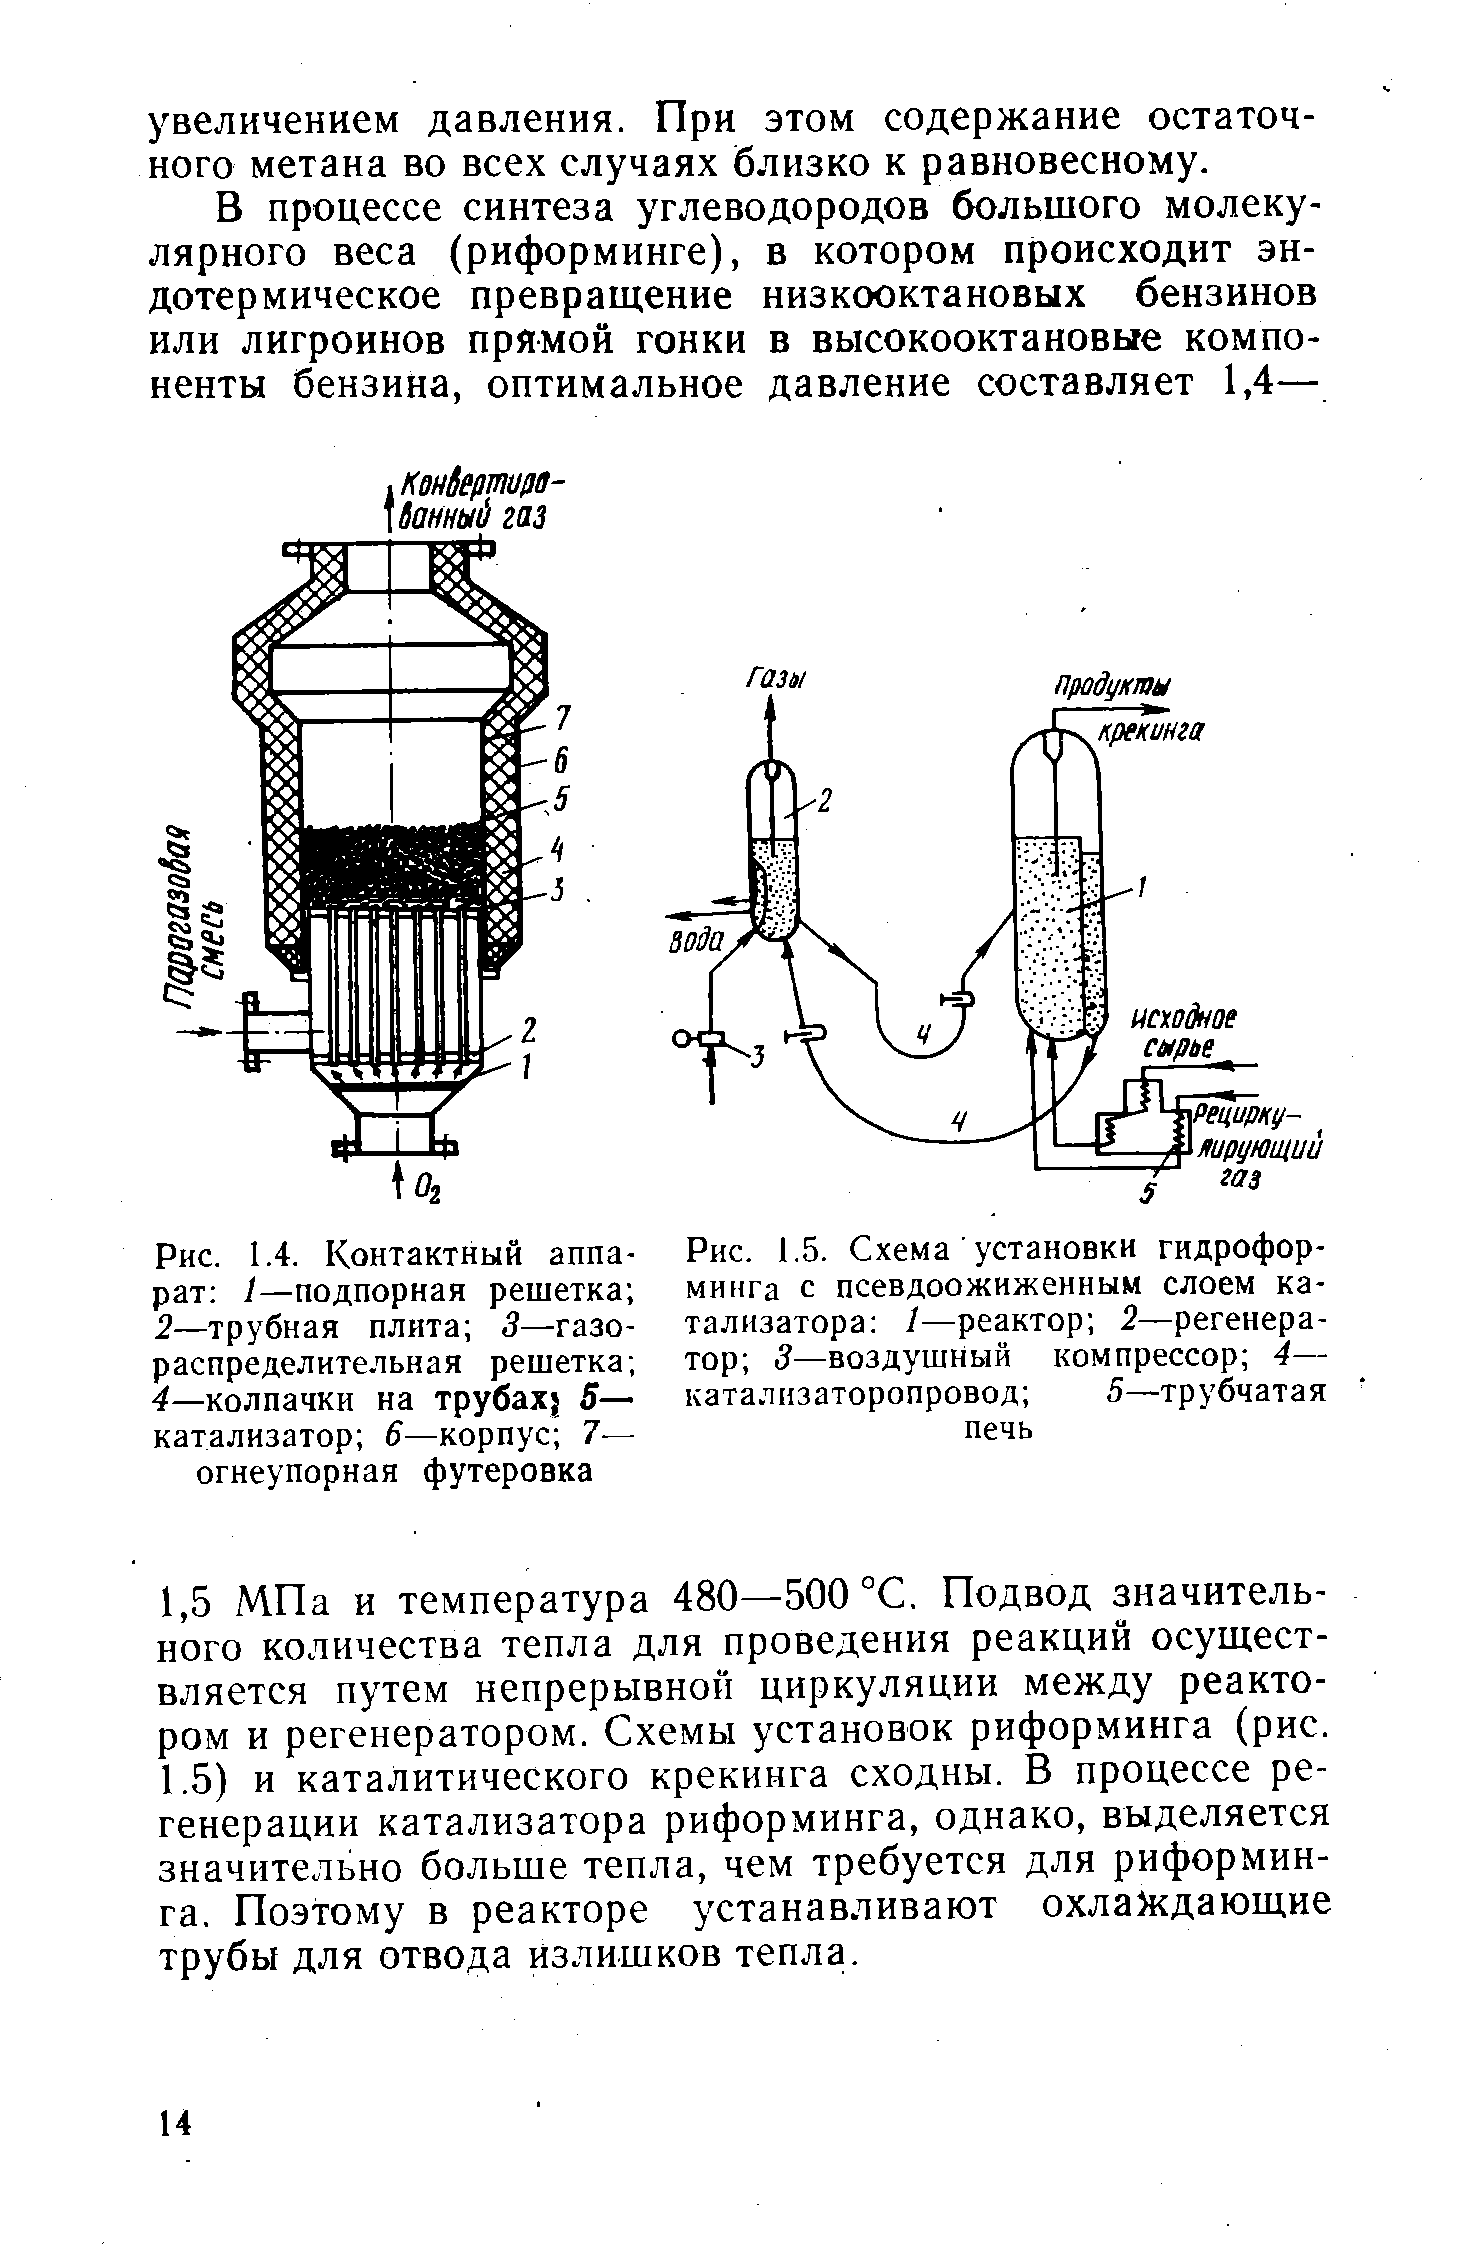 Рис. 1.5. Схема установки гидроформинга с <a href="/info/5512">псевдоожиженным слоем</a> катализатора /—реактор 2—<a href="/info/18259">регенератор</a> 3—<a href="/info/106887">воздушный компрессор</a> 4— каталнзаторопровод 5—трубчатая печь